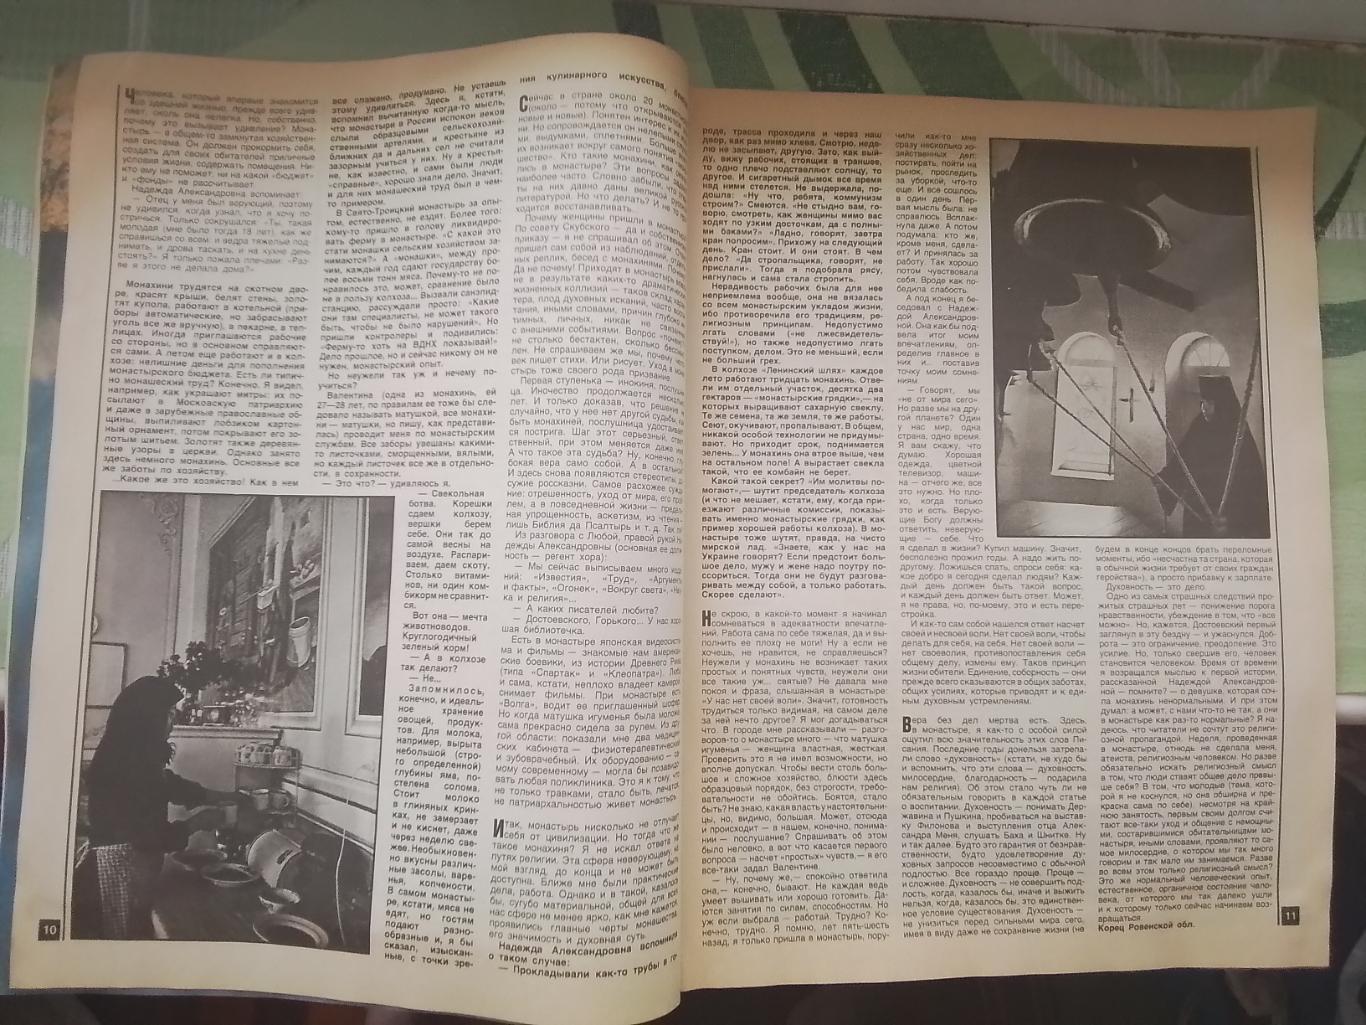 Журнал Работница № 7 1990 Женский монастырь Клара Новикова 3